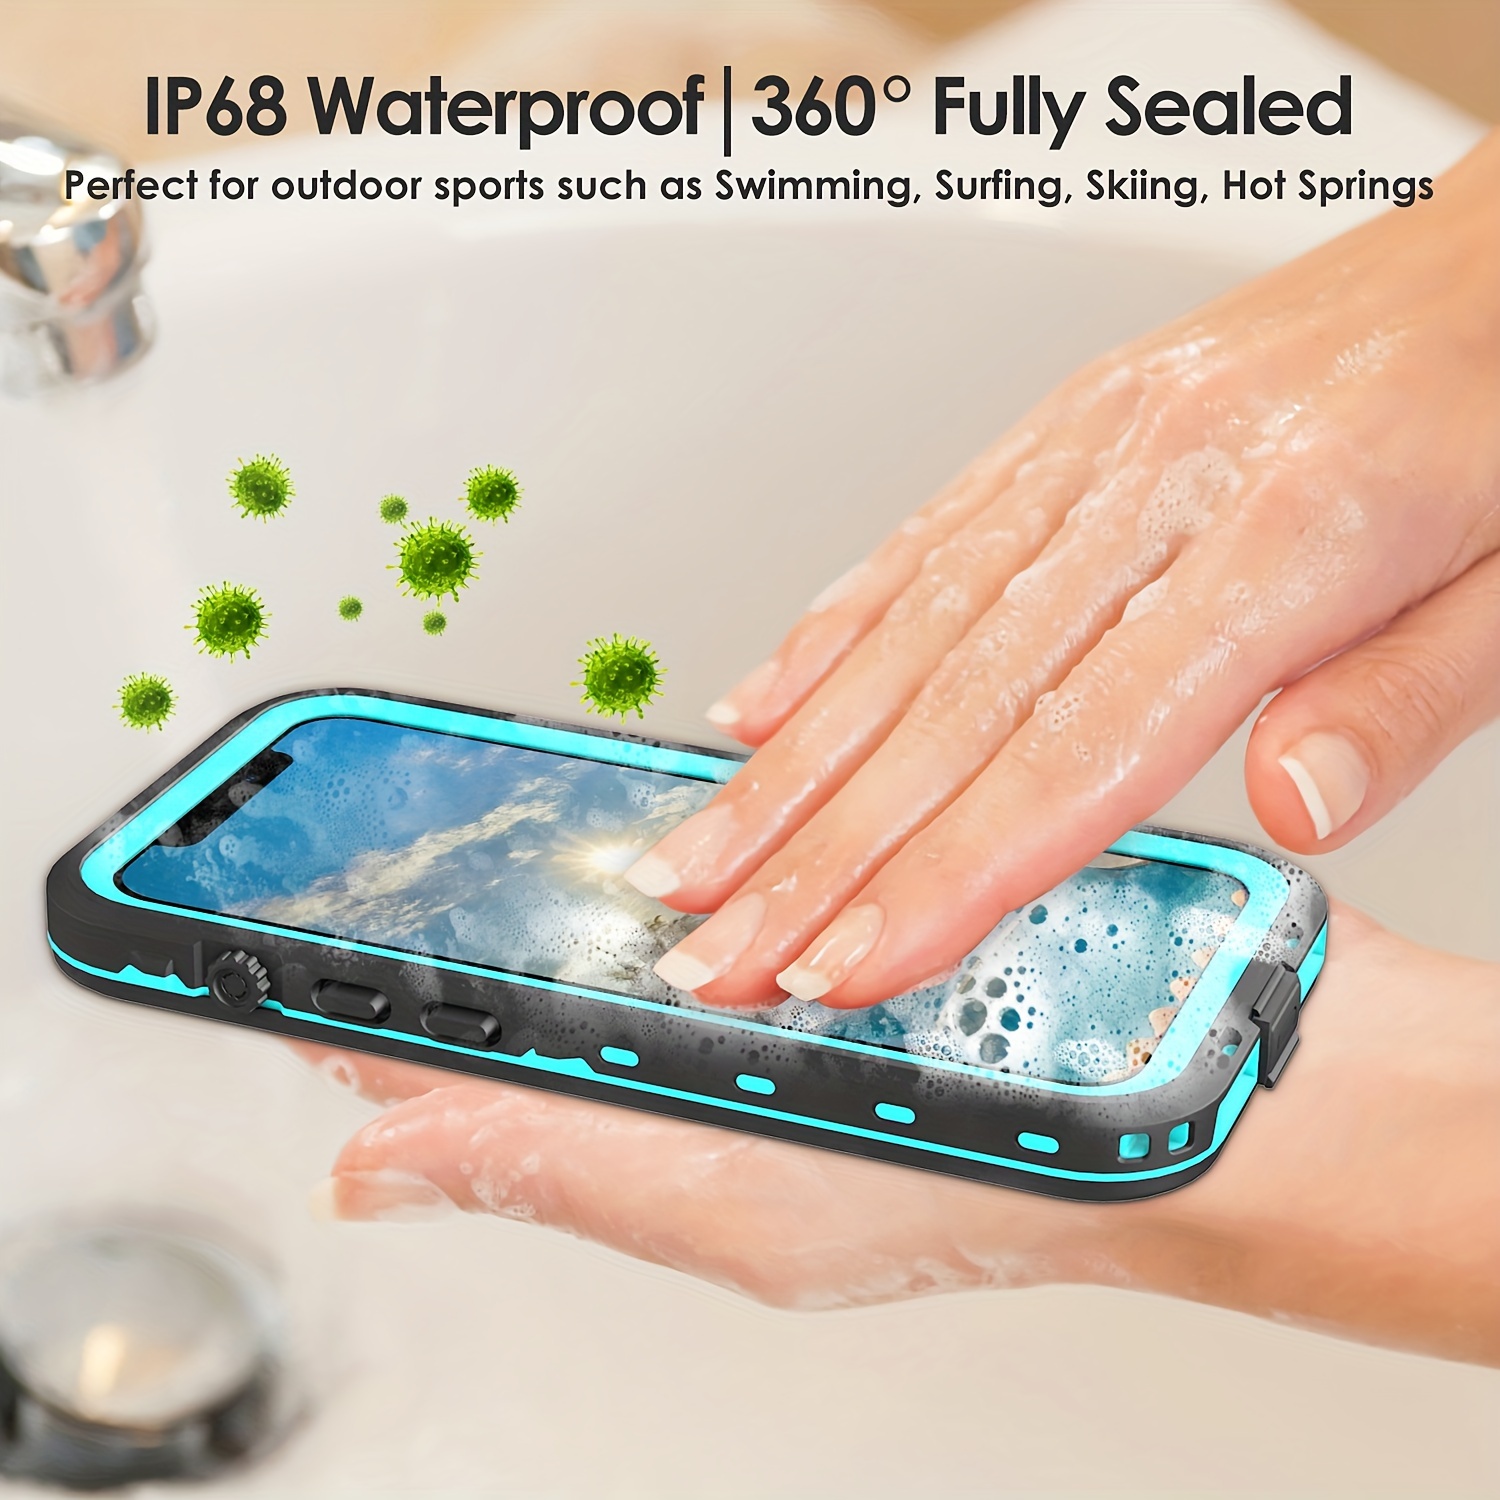 Pochette Etanche Tactile pour IPHONE 6S Plus Smartphone Eau Plage IPX8  Waterproof Coque (NOIR)